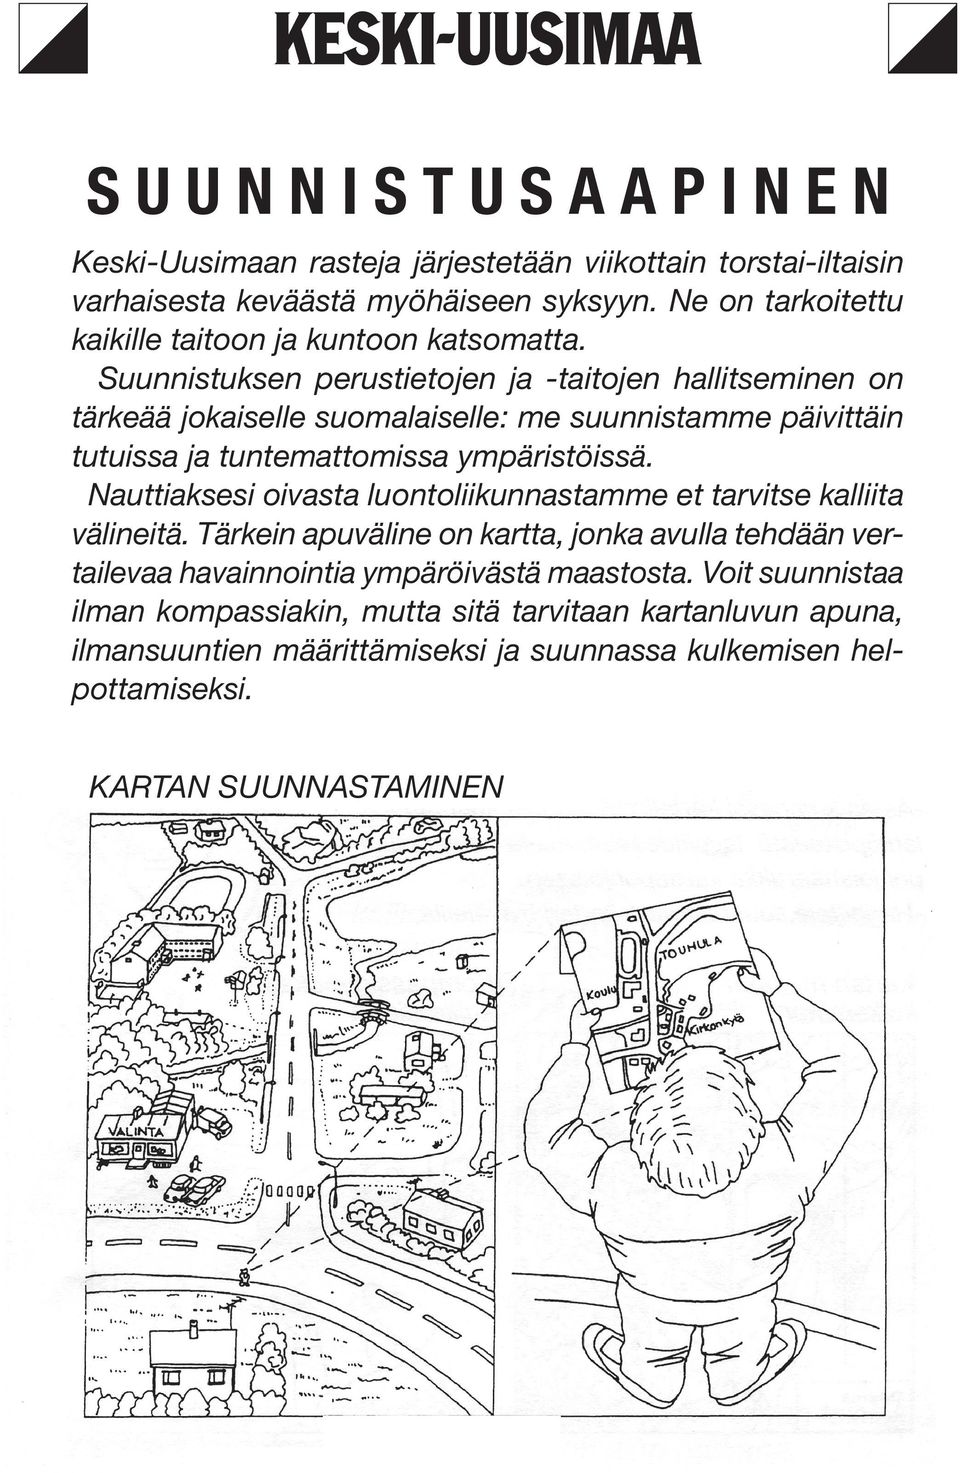 Suunnistuksen perustiejen ja -taijen hallitseminen on tärkeää jokaiselle suomalaiselle: me suunnistamme päivittäin tutuissa ja tuntematmissa ympäristöissä.